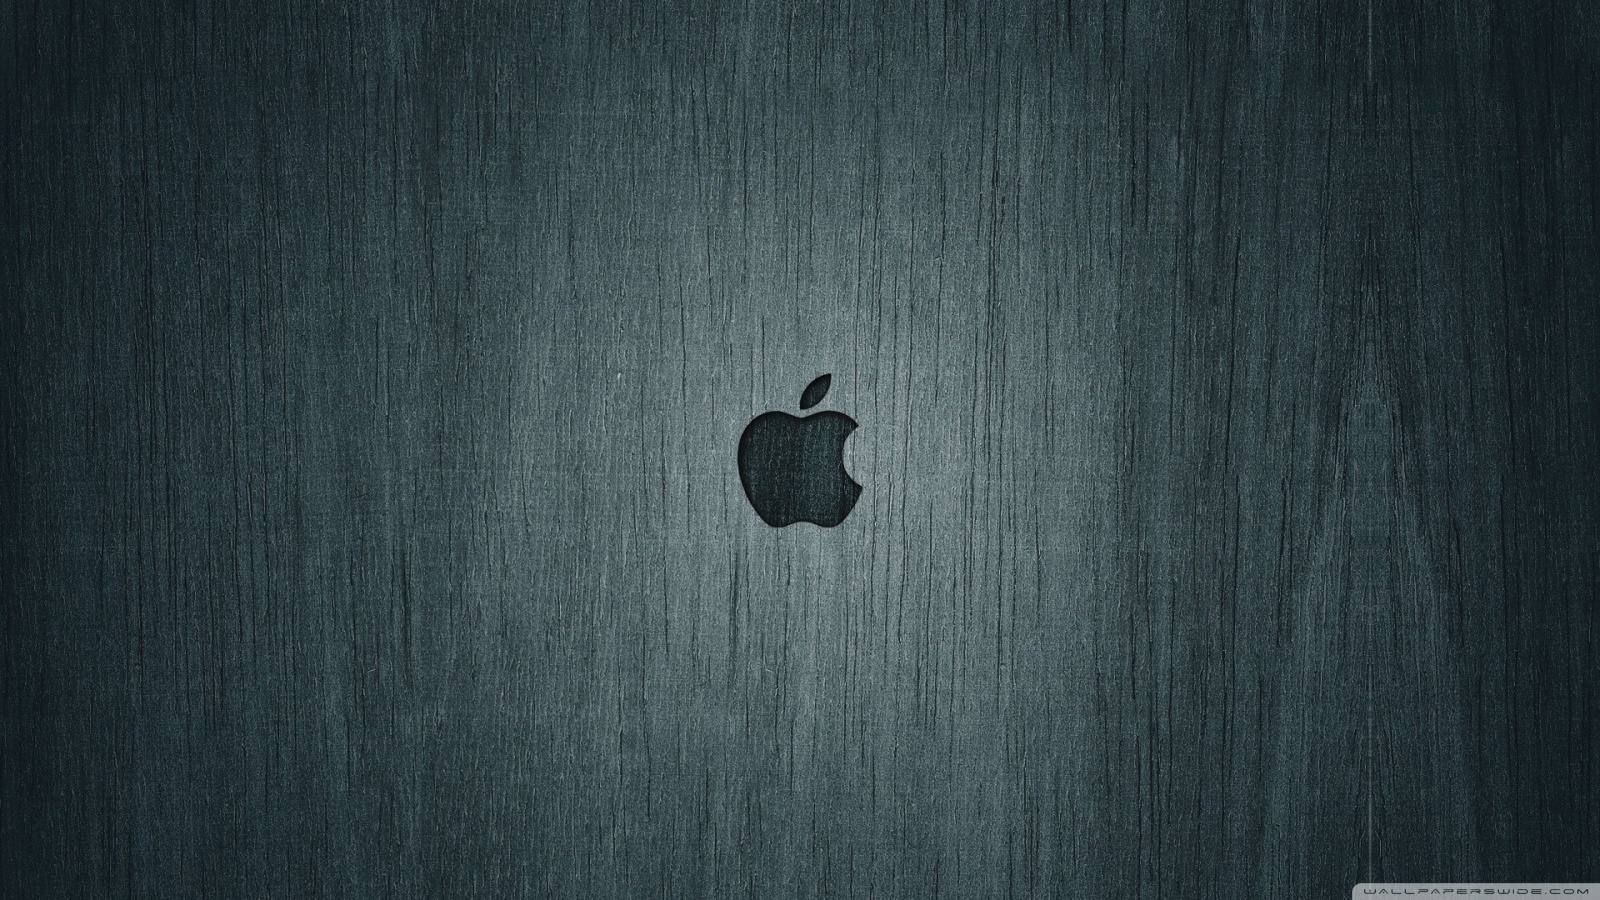 Apple Logo 4K Wallpaper đặc biệt của chúng tôi mang lại cho bạn trải nghiệm độc đáo và tinh tế. Để cảm nhận được điều đó, bạn chỉ cần xem một số hình ảnh liên quan đến từ khóa này.